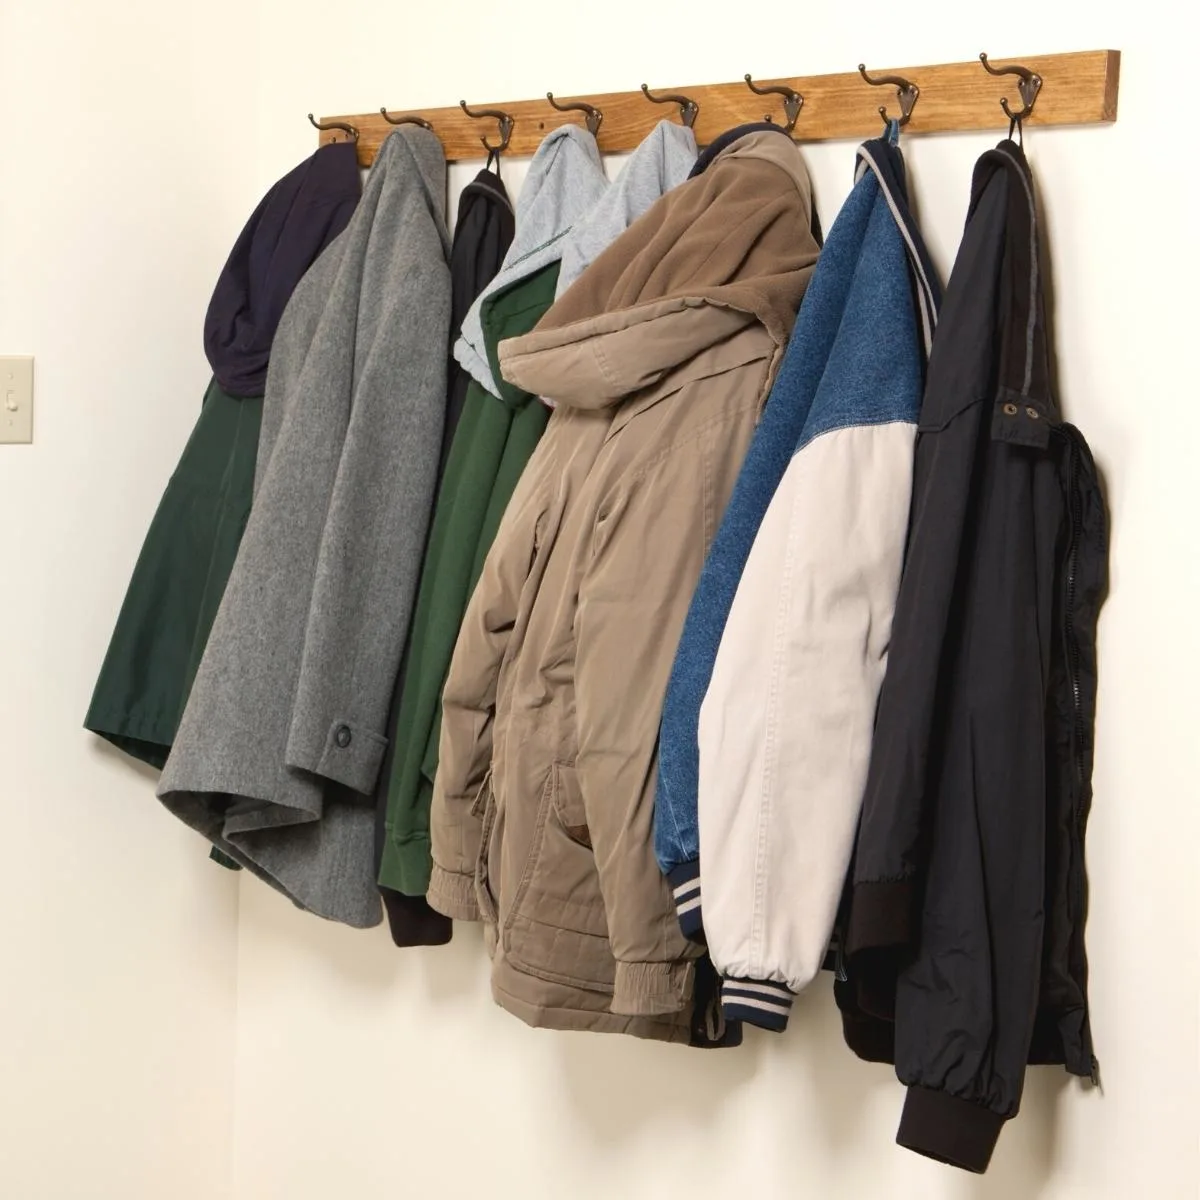 coat rack mounted to wall